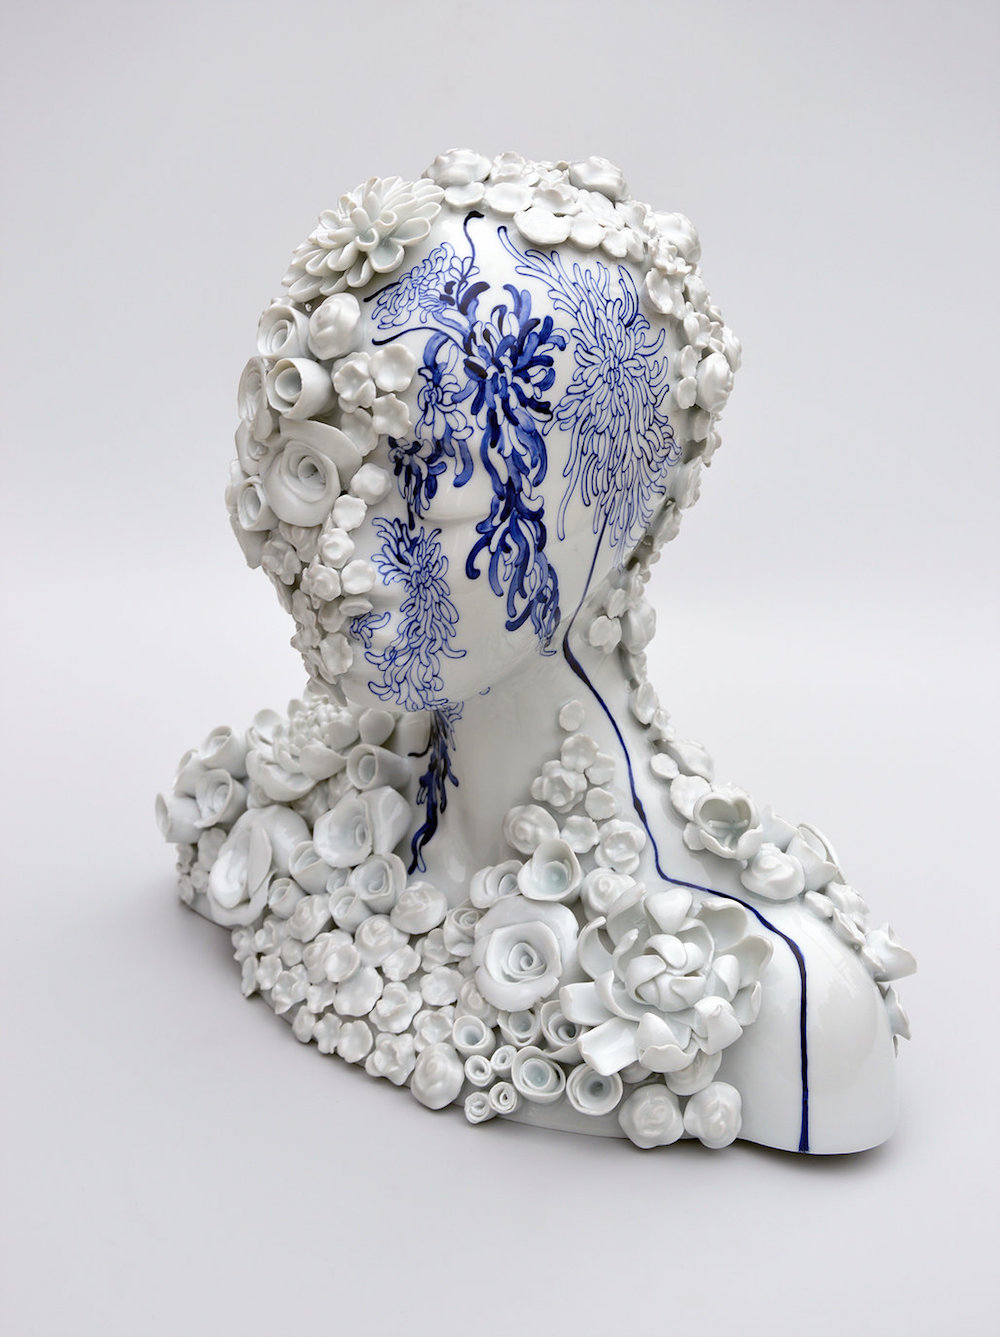 Surreal Figurative Porcelain Sculptures By Juliette Clovis 27